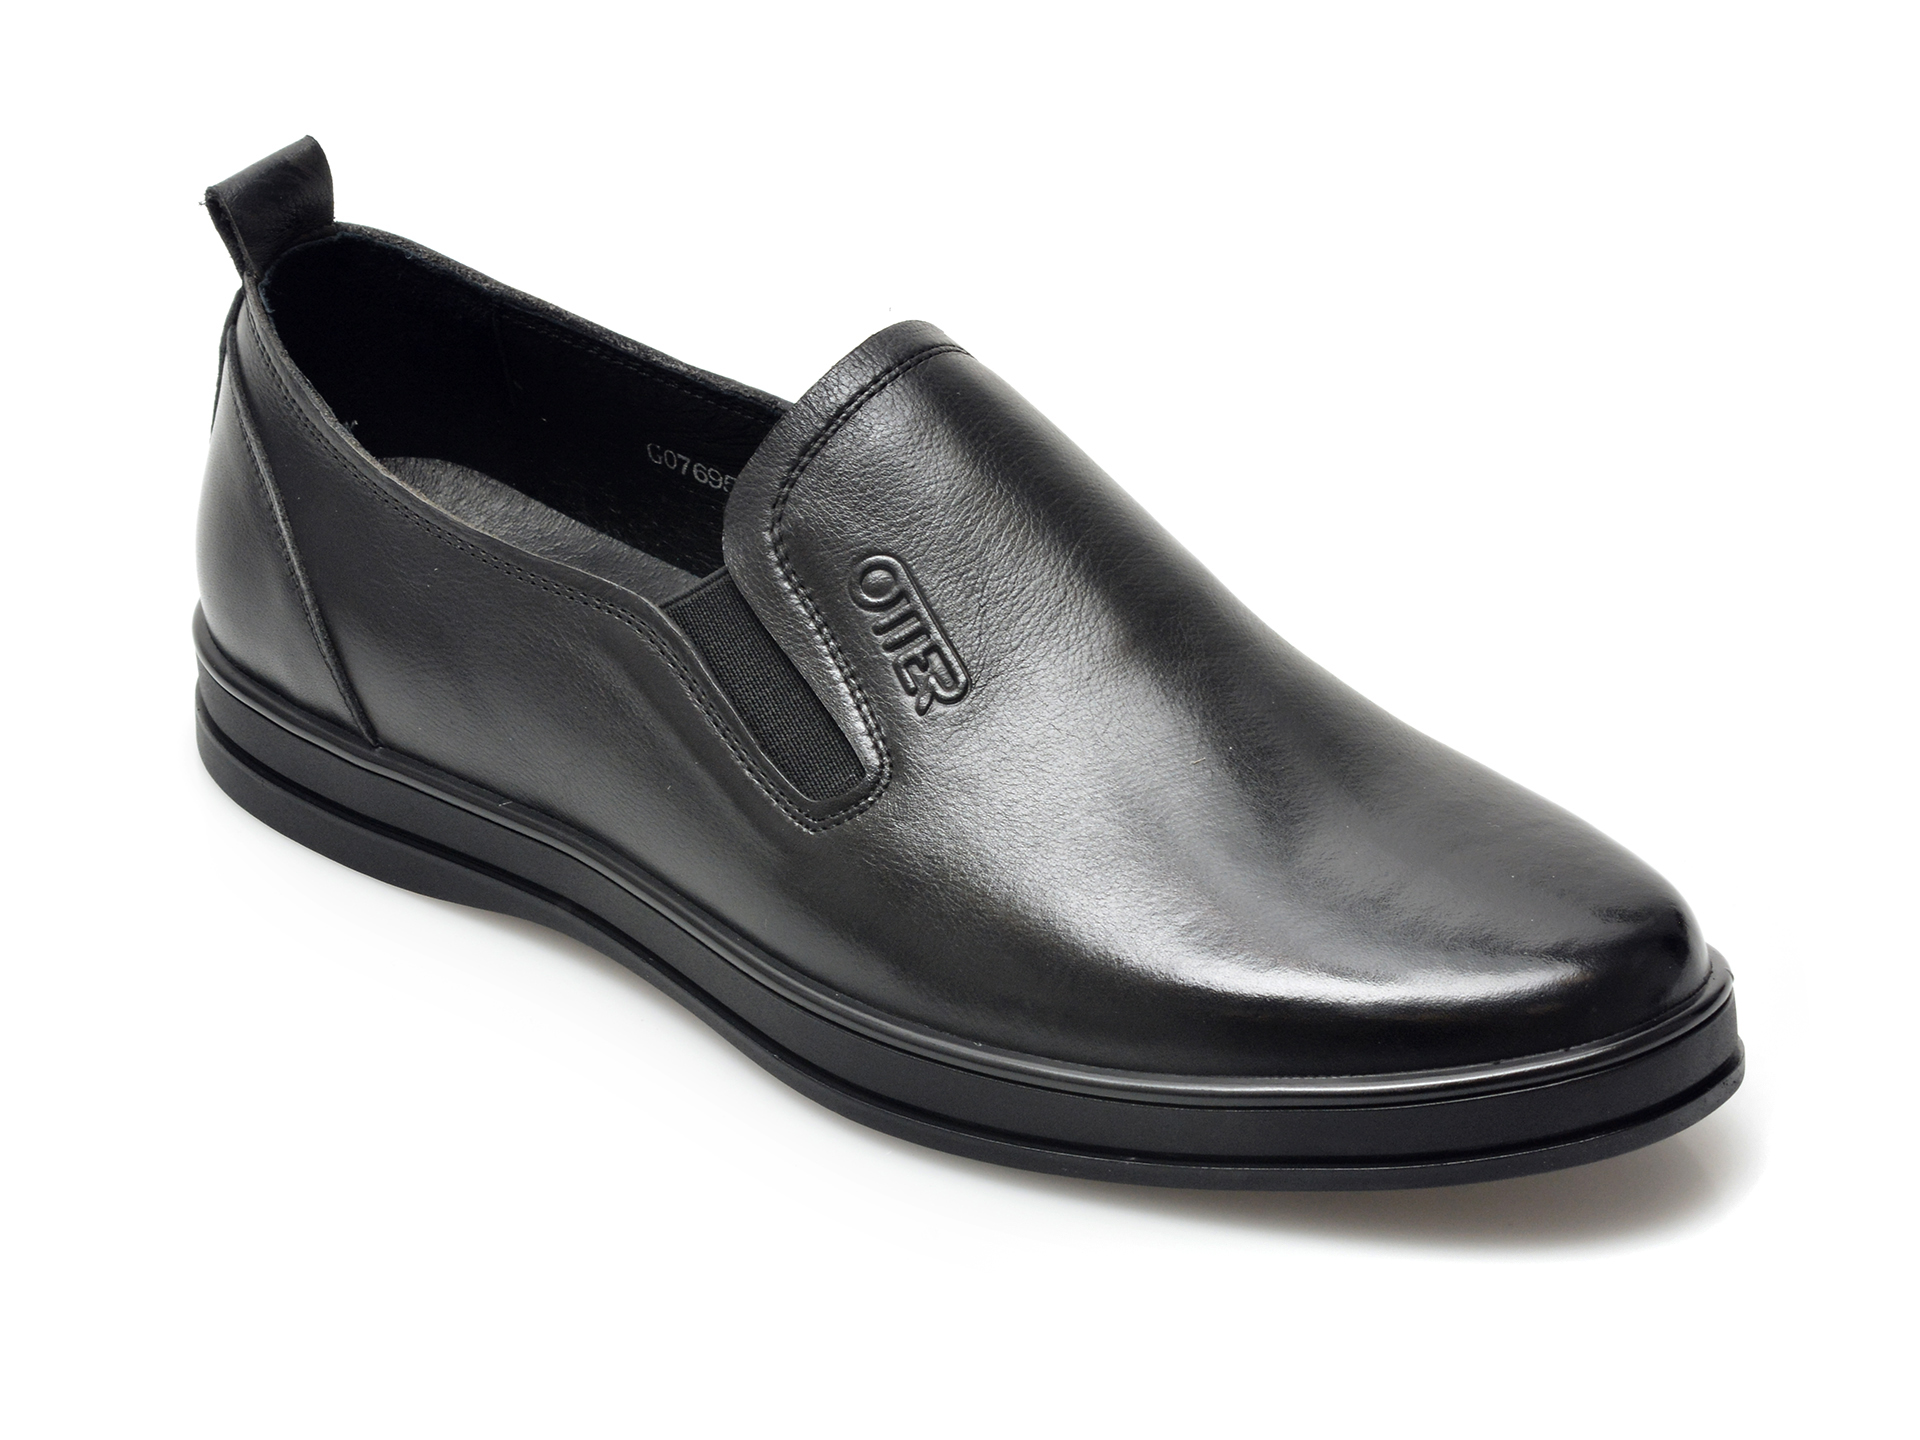 Pantofi OTTER negri, G07695, din piele naturala 2023 ❤️ Pret Super Black Friday otter.ro imagine noua 2022